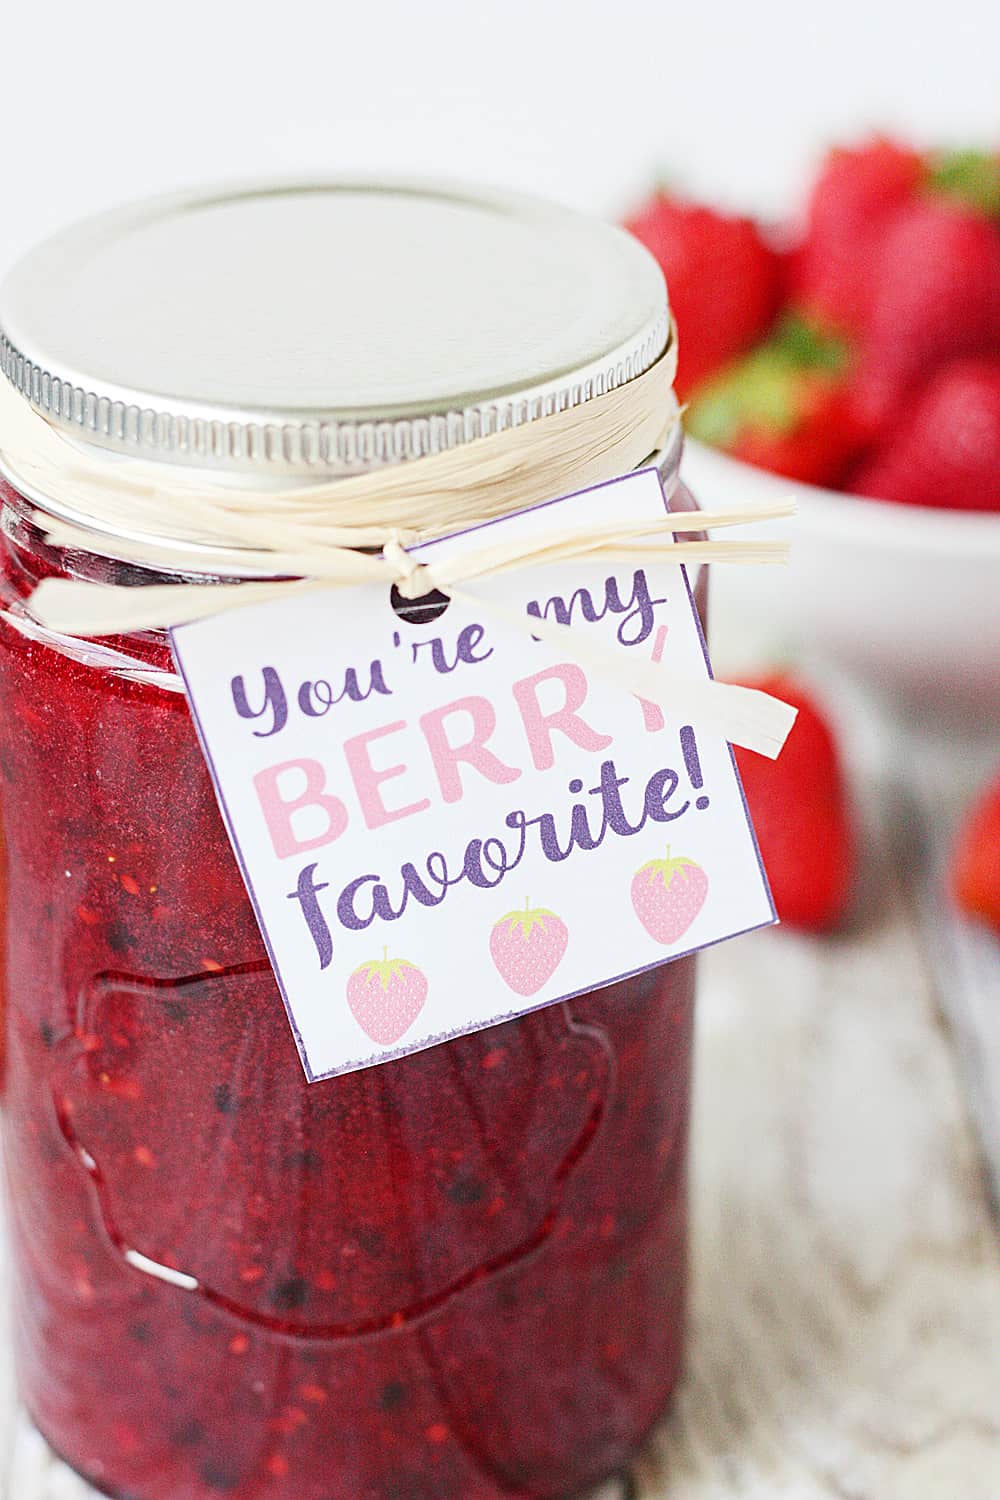 Mixed Berry Freezer Jam in a jar close-up.